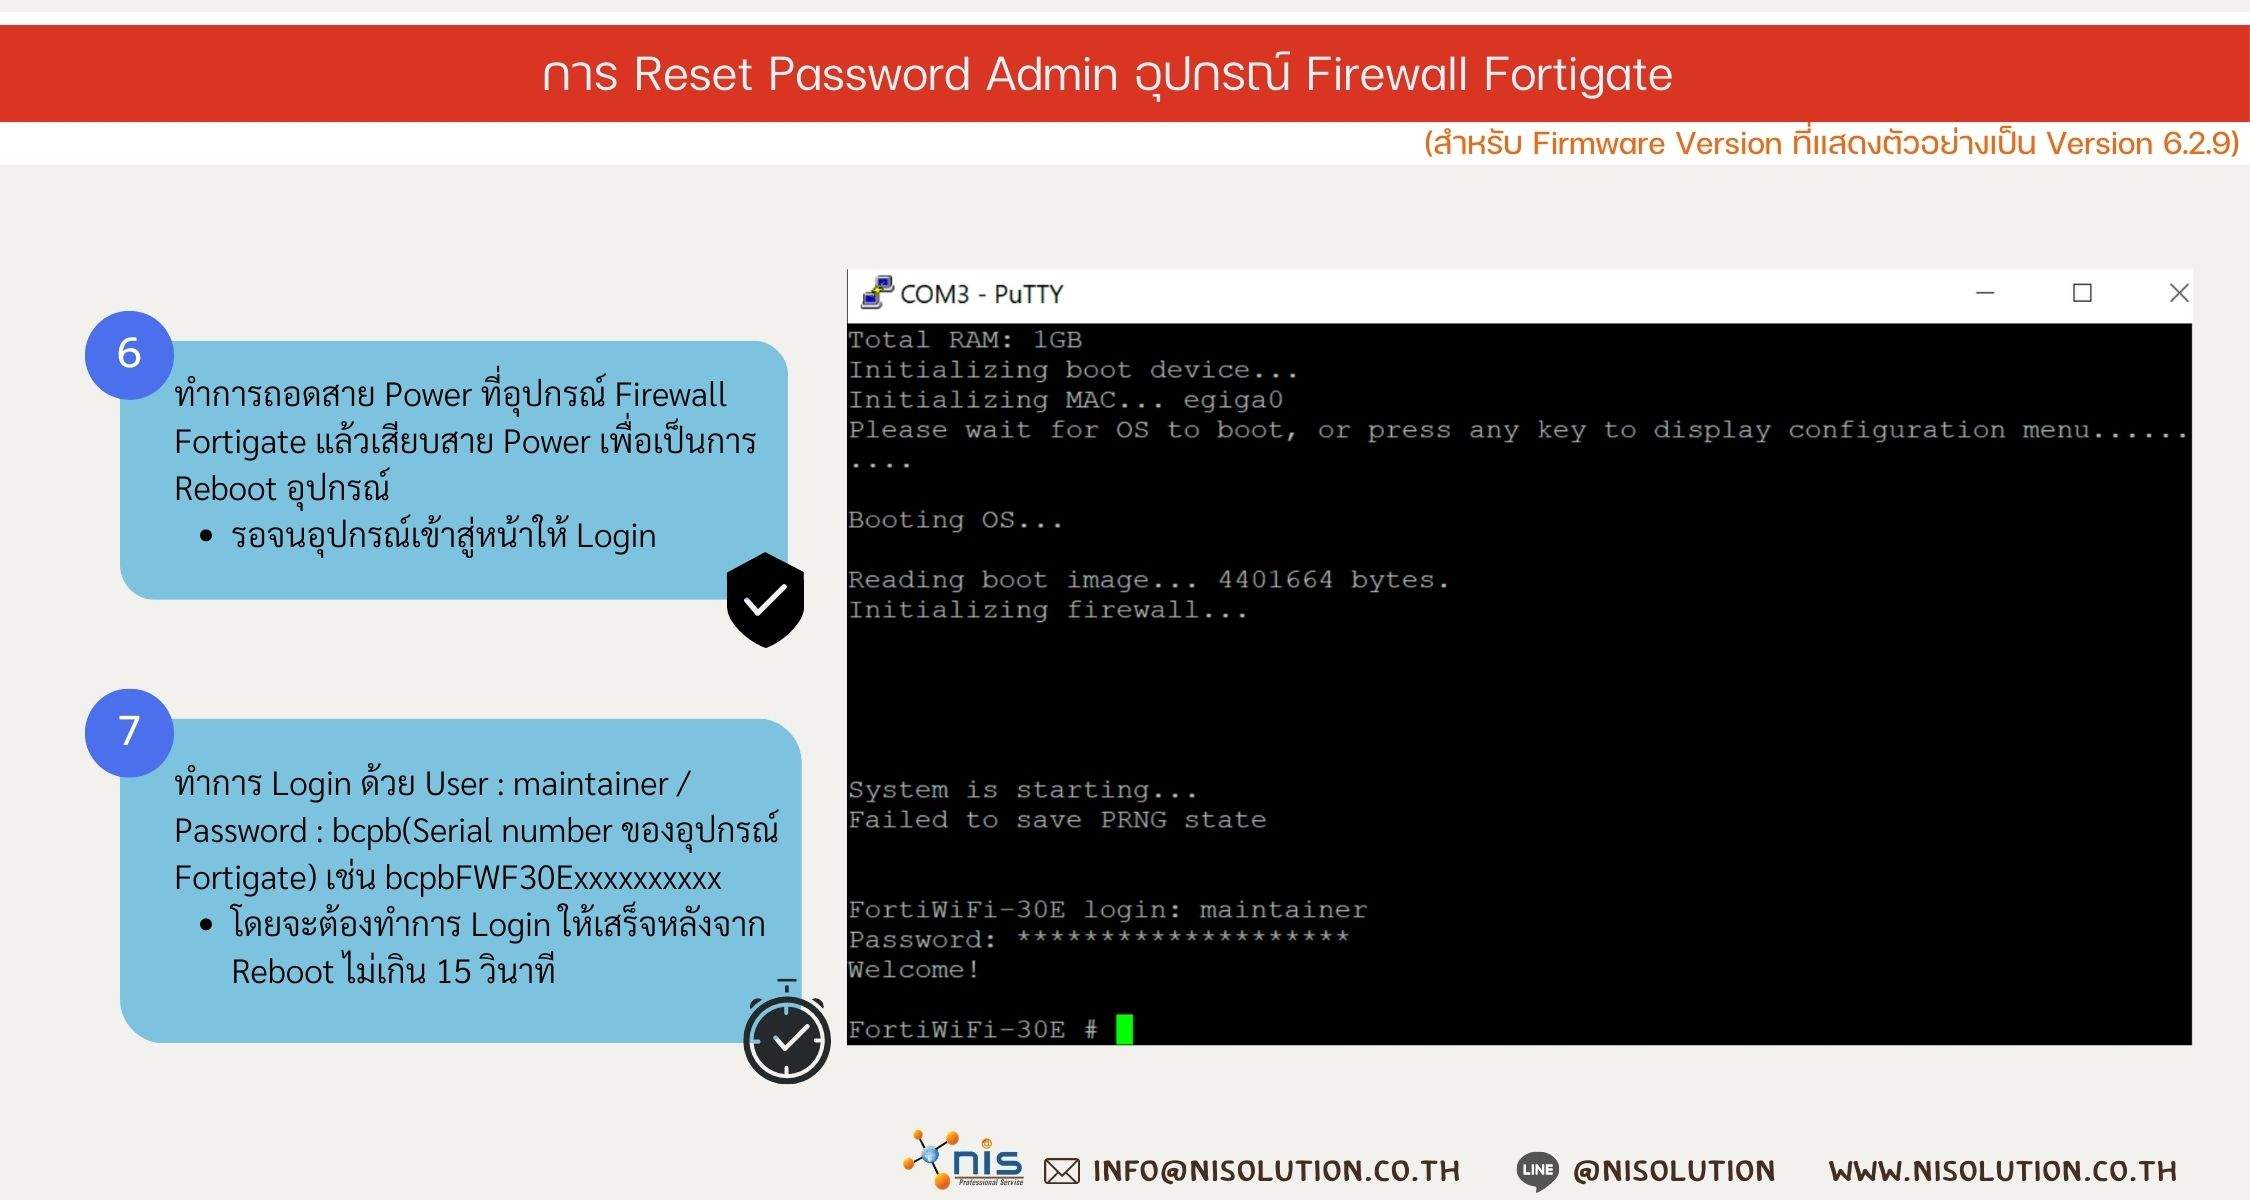 Reset Password Admin Firewall Fortigate